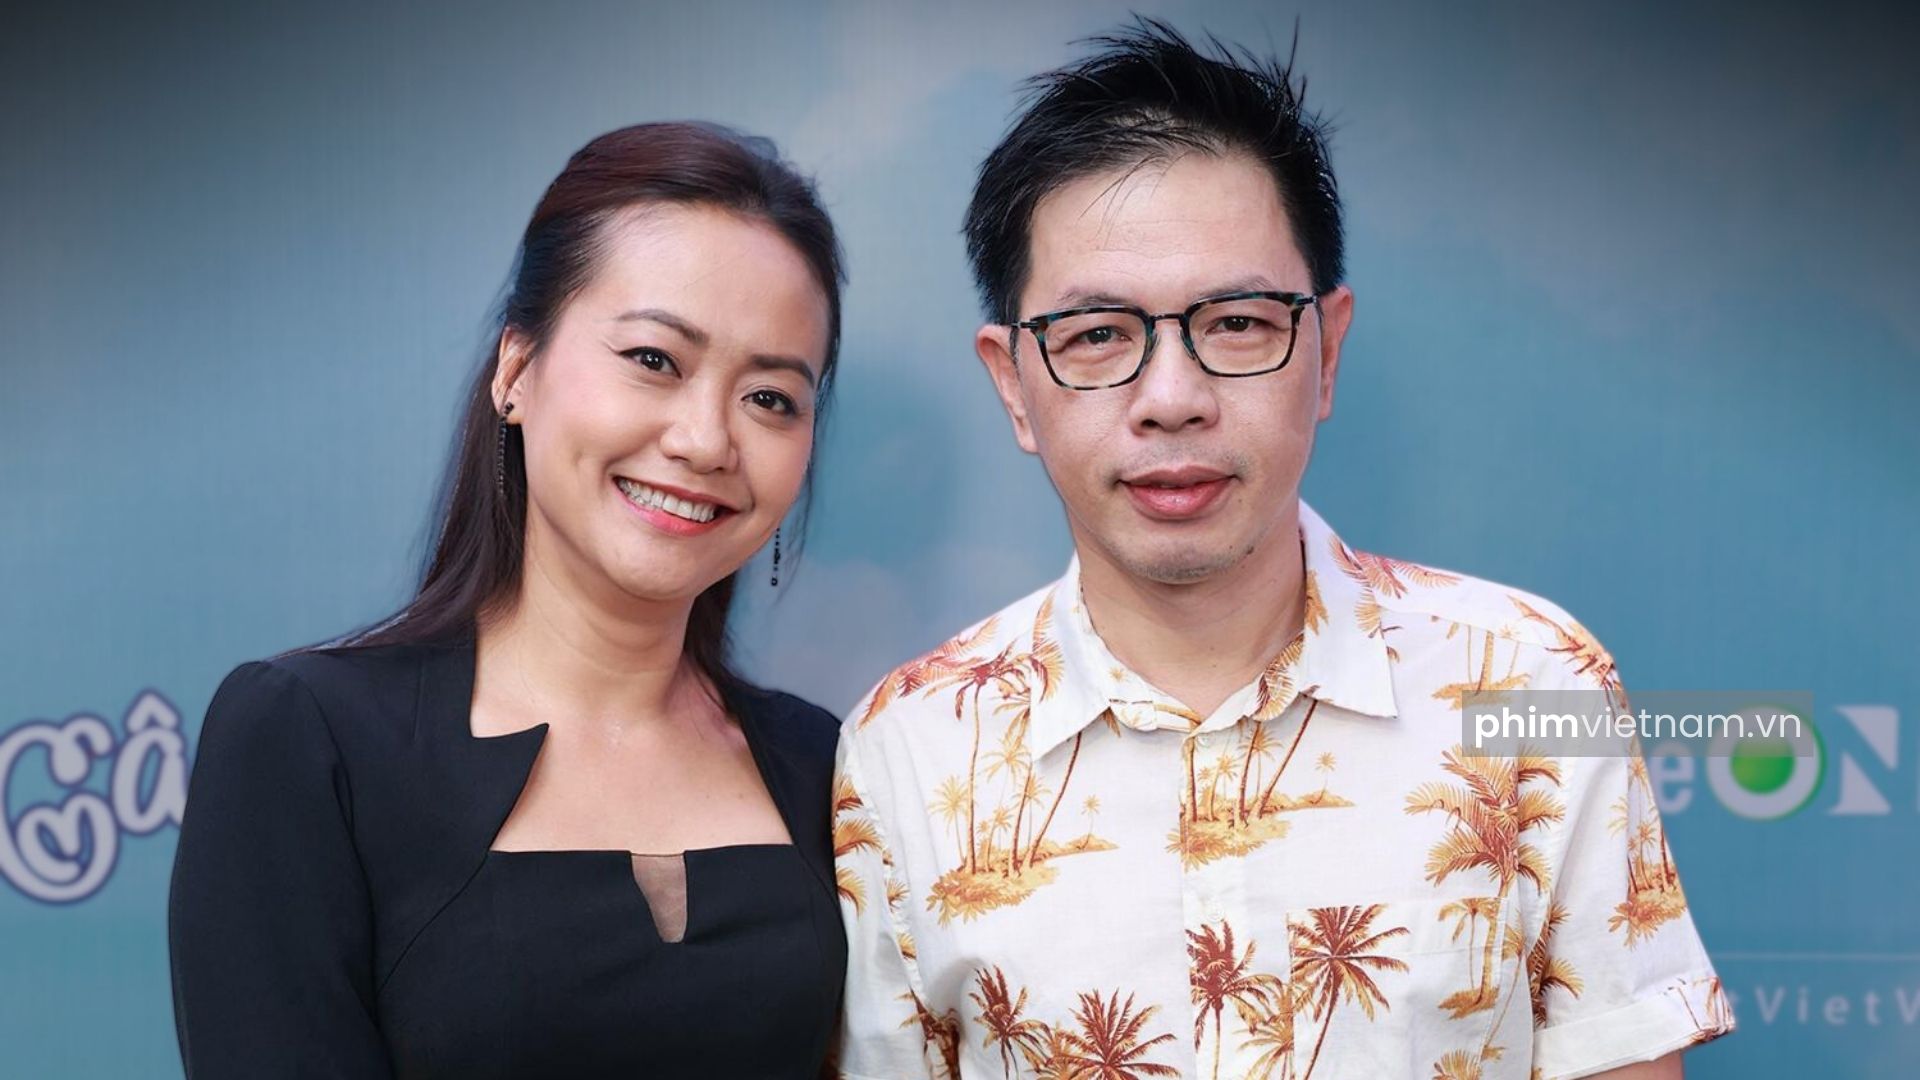 Diễn viên Thái Hòa và diễn viên Hồng Ân đóng cặp trong phim "Cây táo nở hoa"